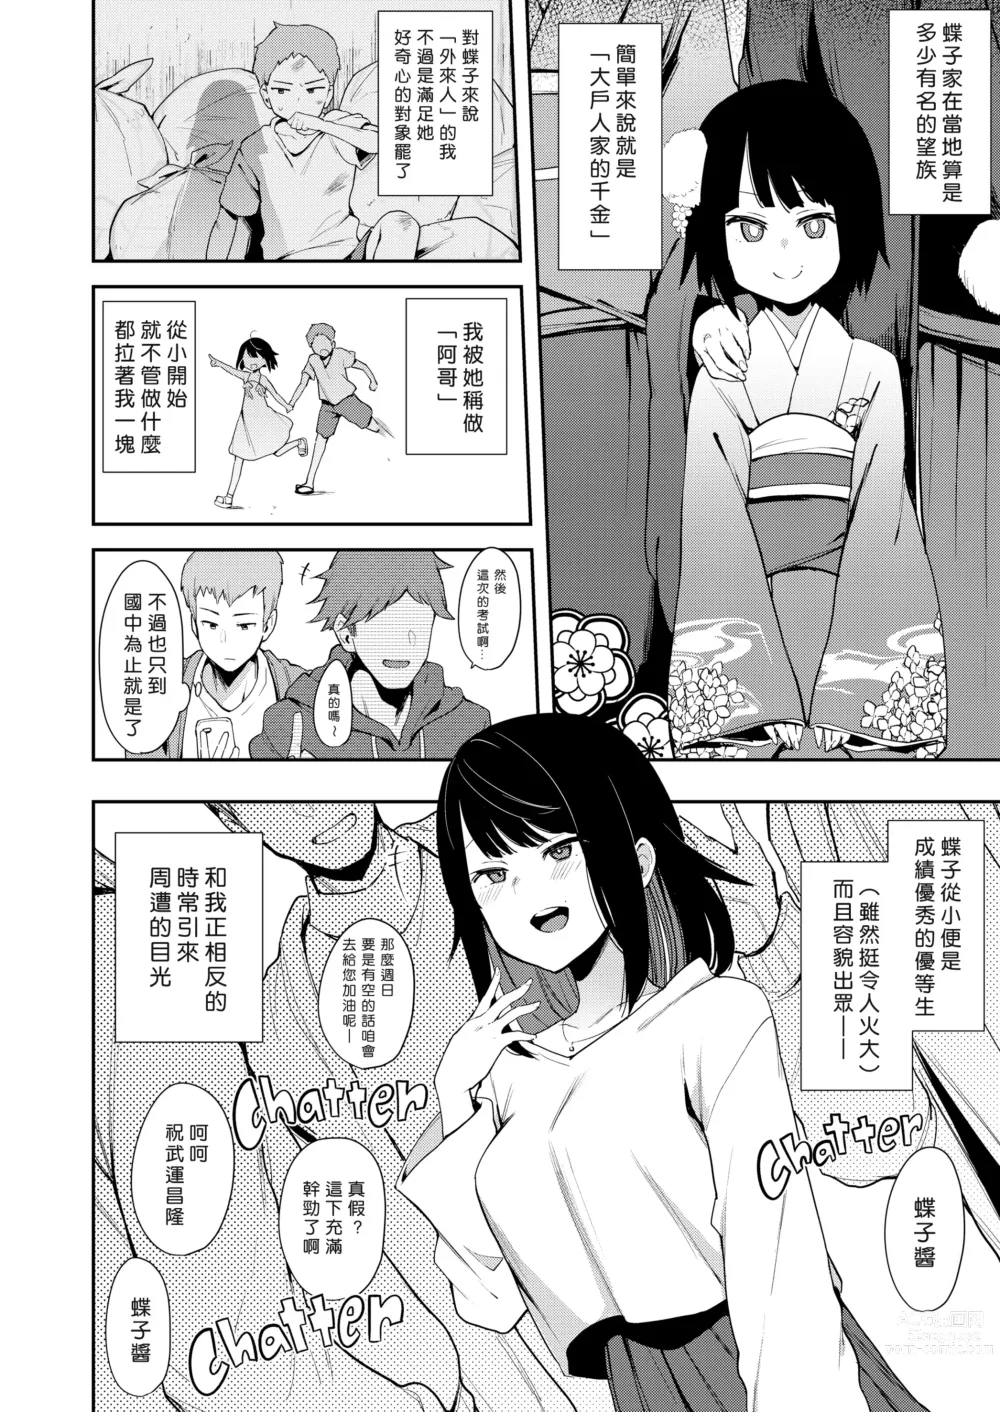 Page 6 of doujinshi Chouko I~V